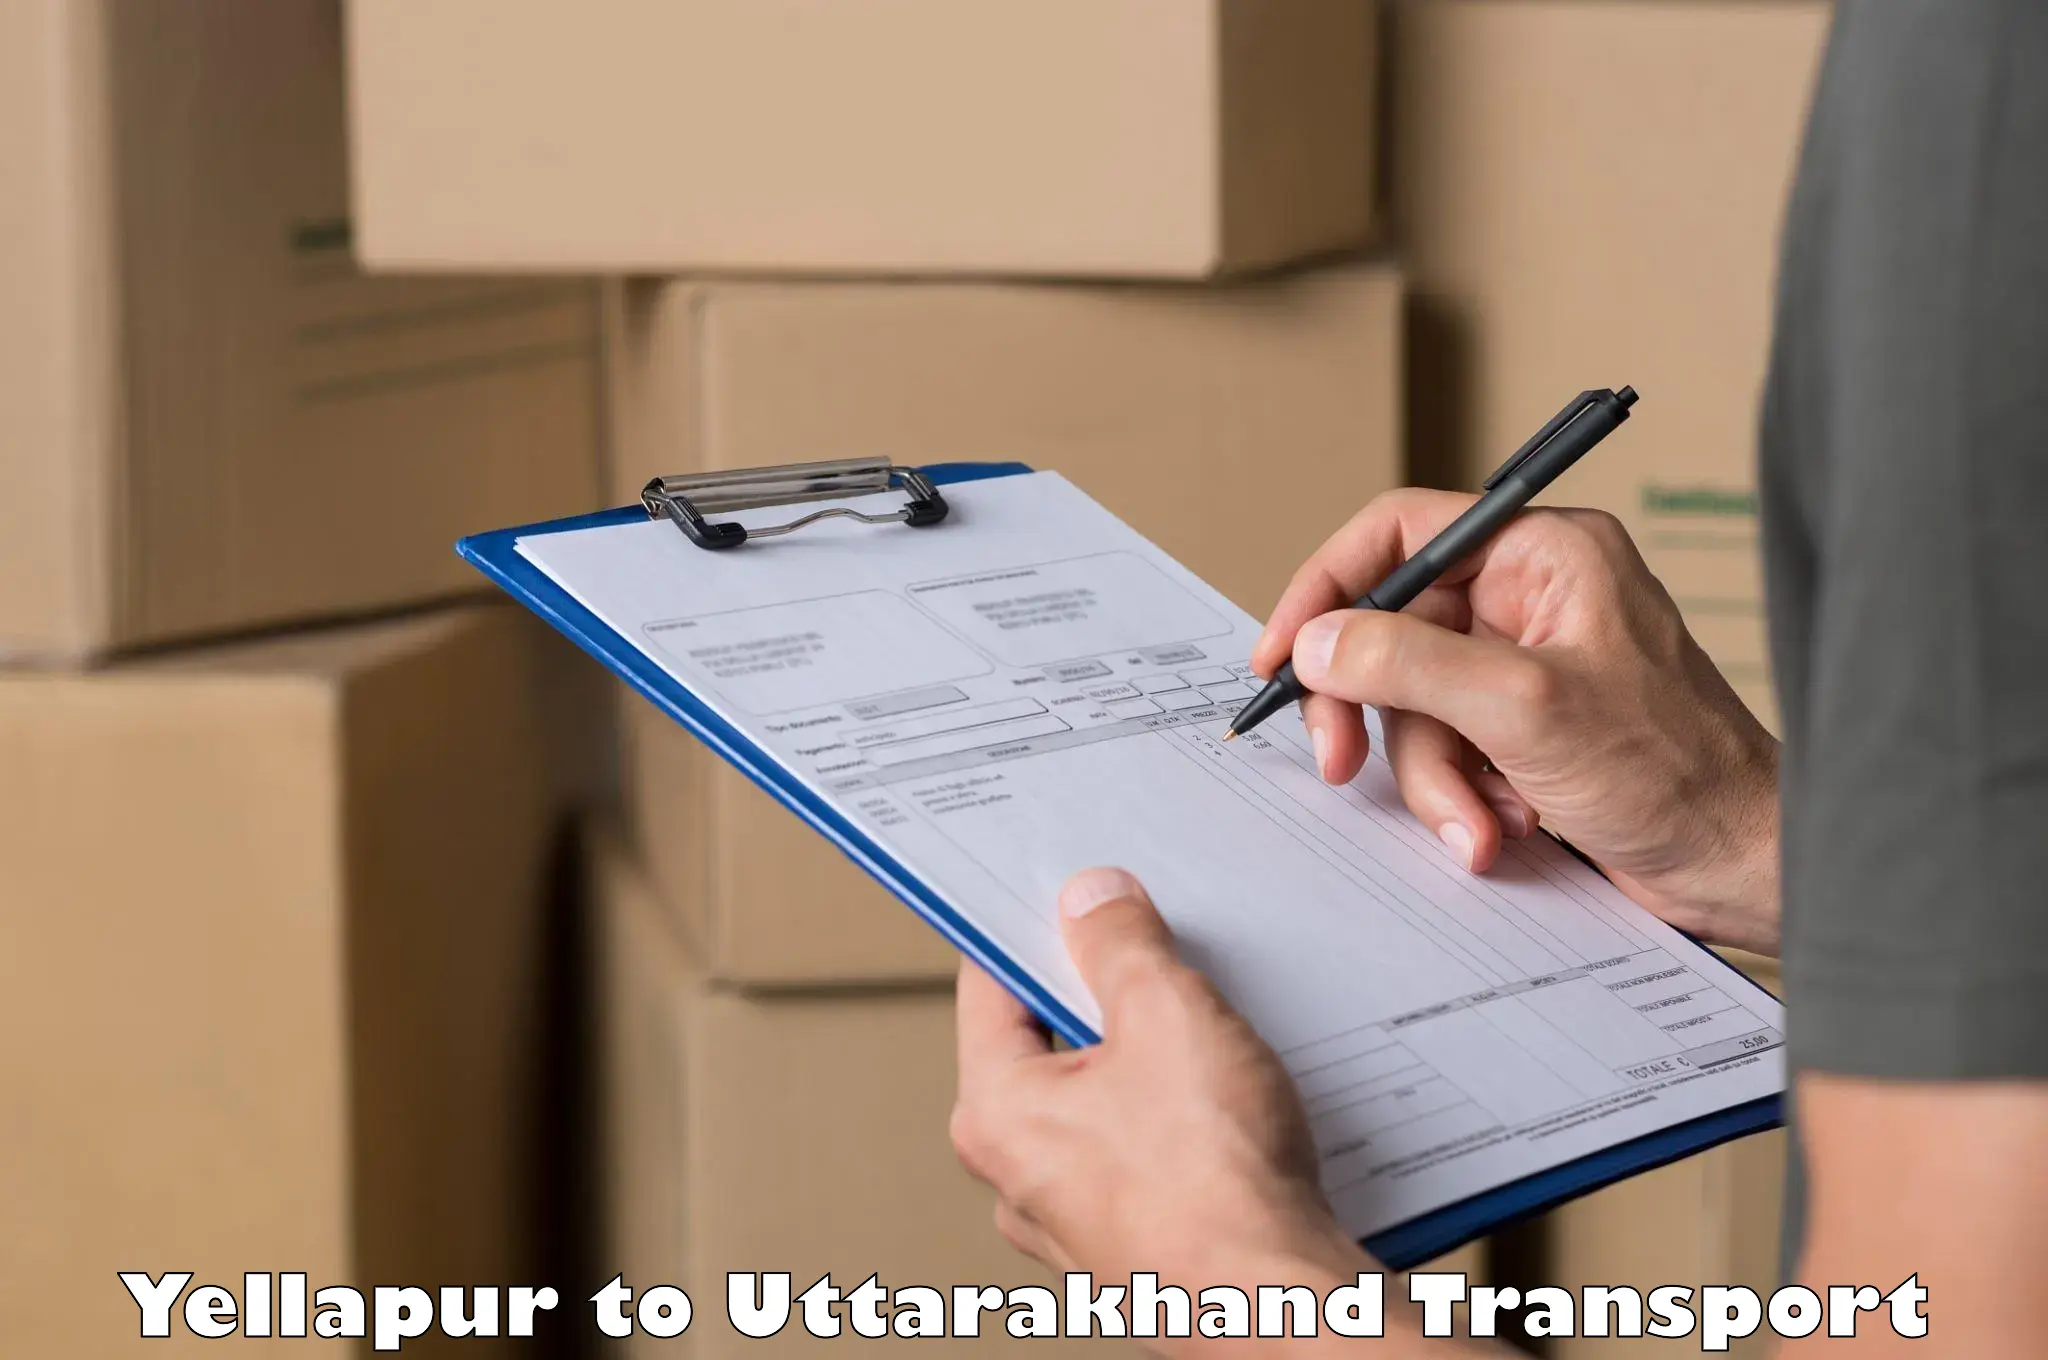 Nationwide transport services Yellapur to Uttarakhand